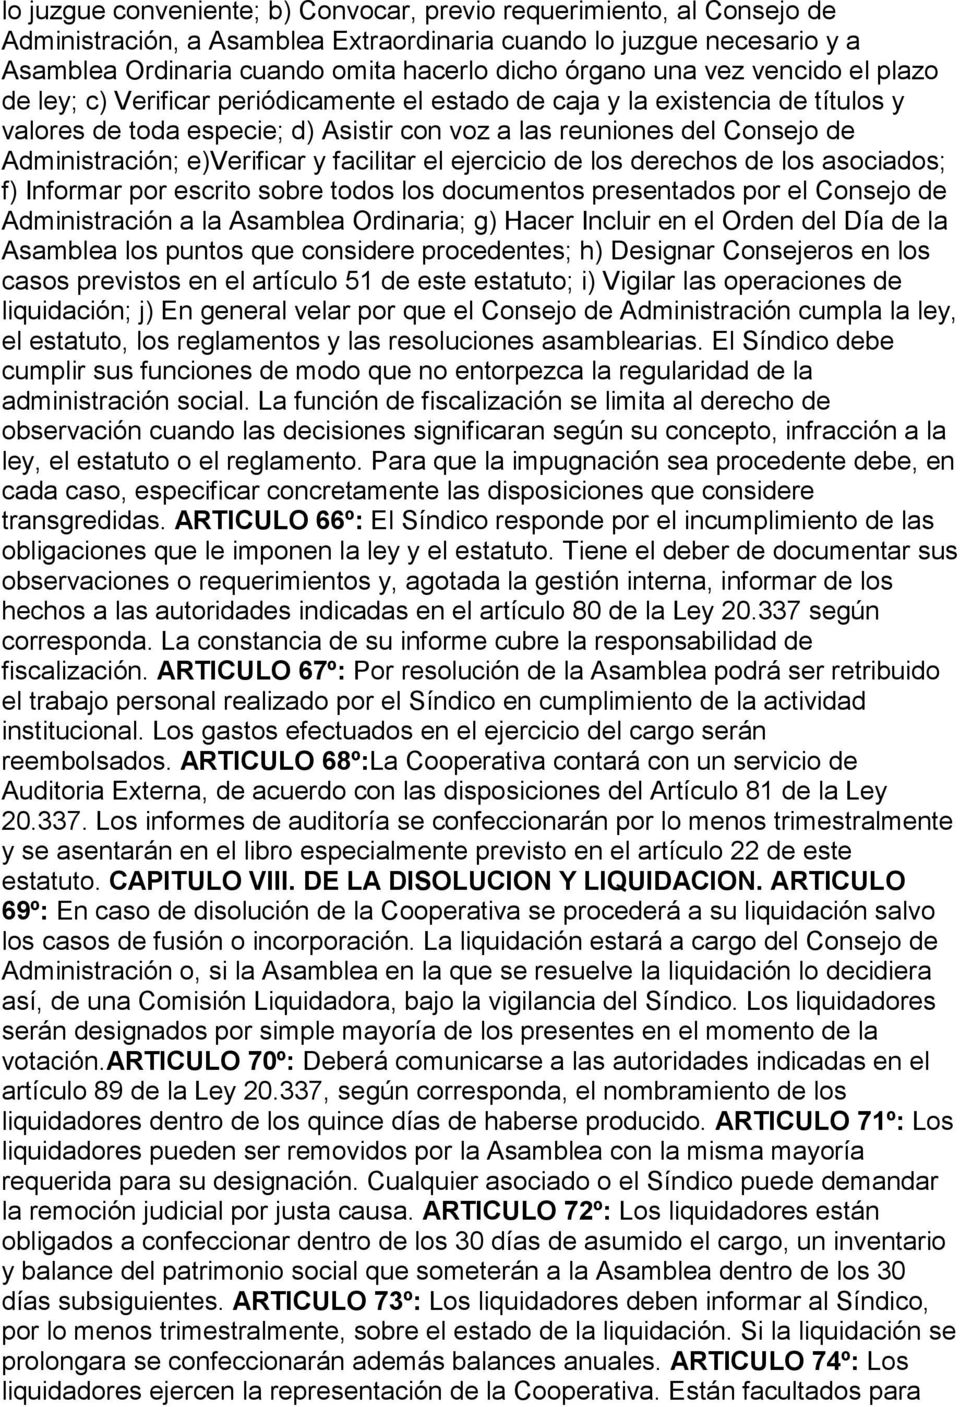 ACTA CONSTITUTIVA DE LA COOPERATIVA DE VIVIENDA, CREDITO, Y CONSUMO  (Consignar un nombre de fantasía) LIMITADA - PDF Free Download